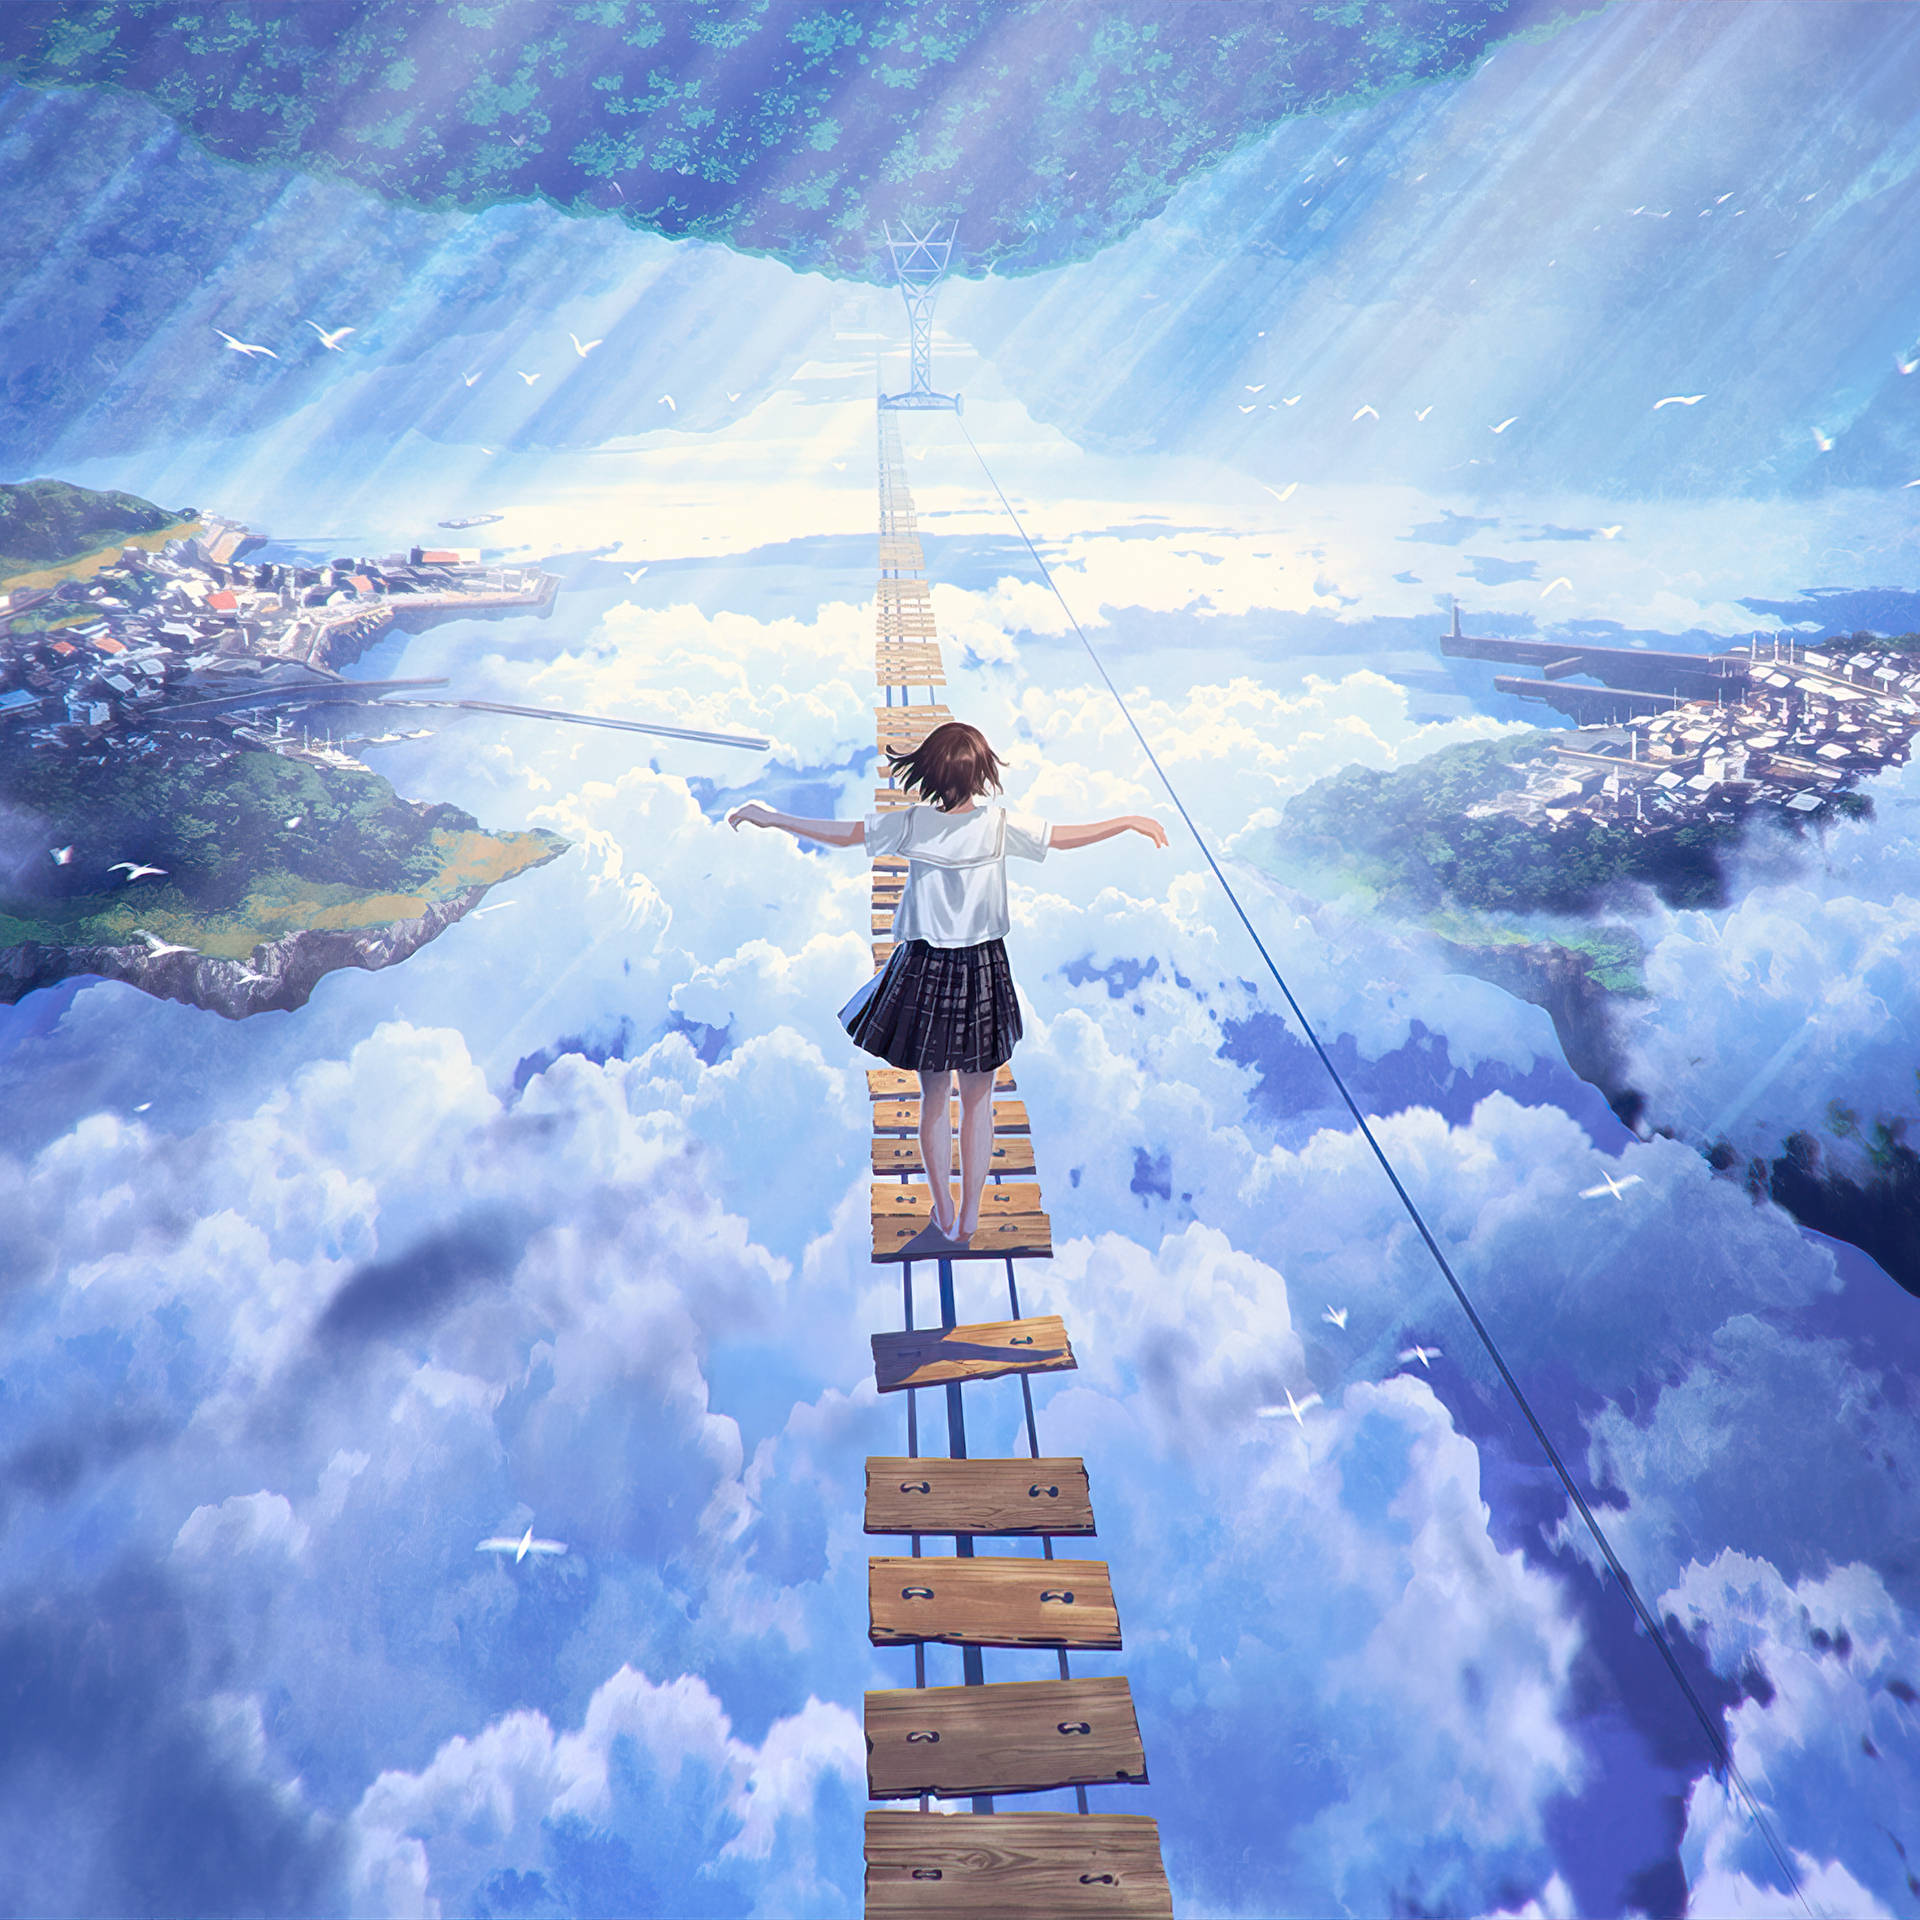 Anime Ipad Girl Walking On Bridge Background